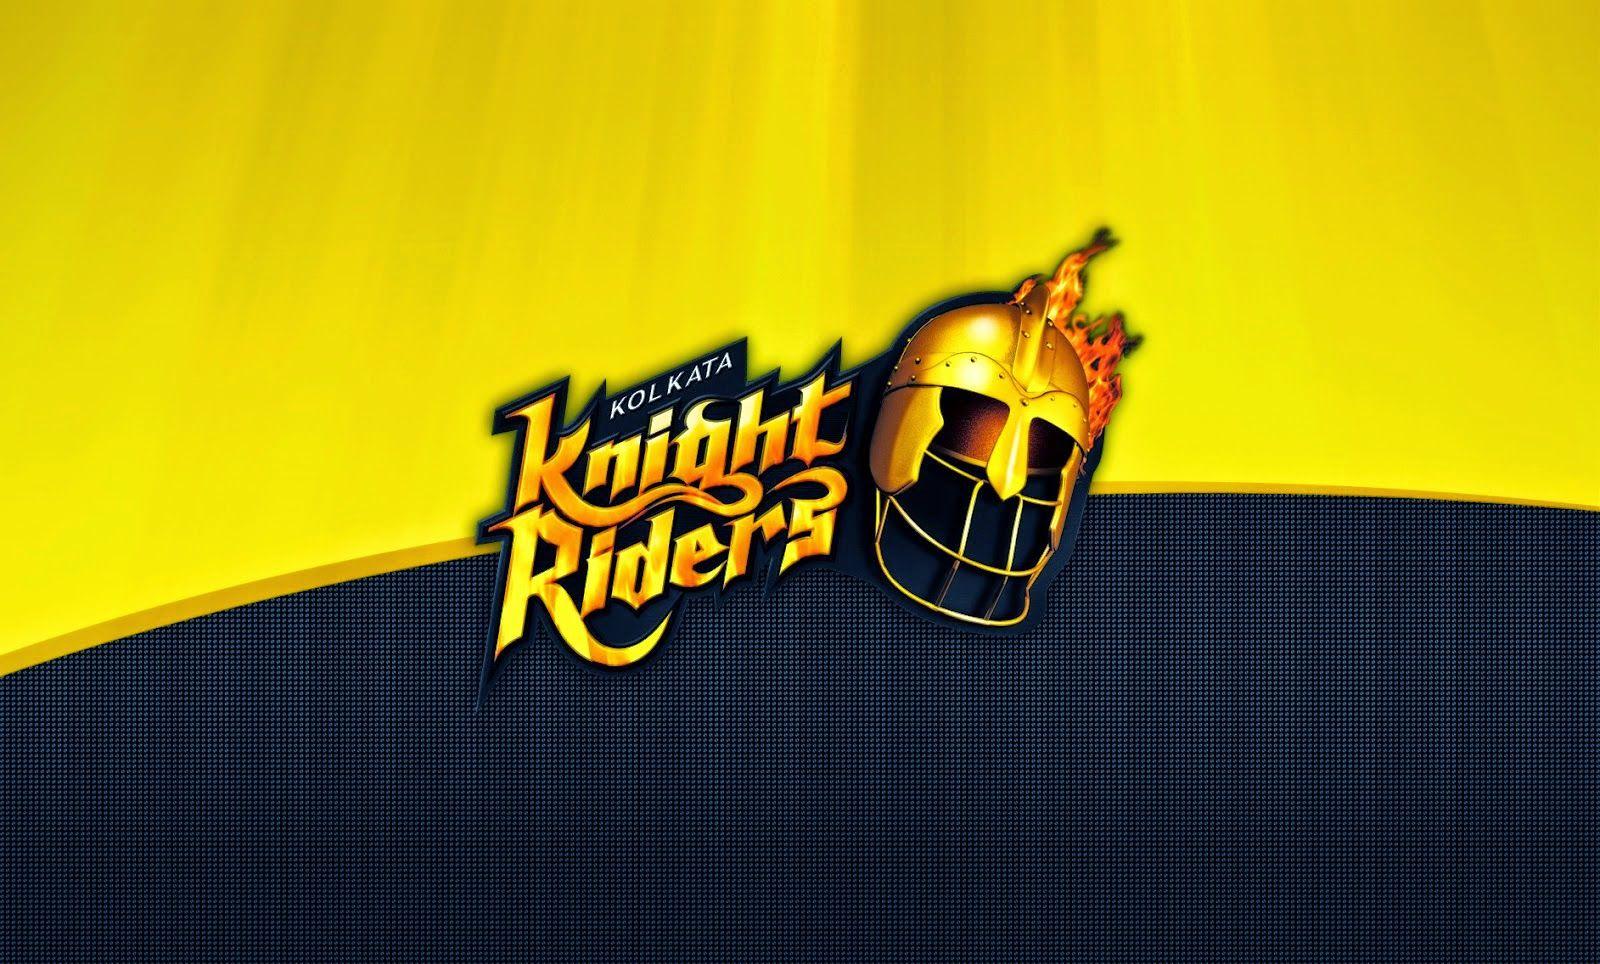 KKR kolkata knight riders super fans HD phone wallpaper  Peakpx